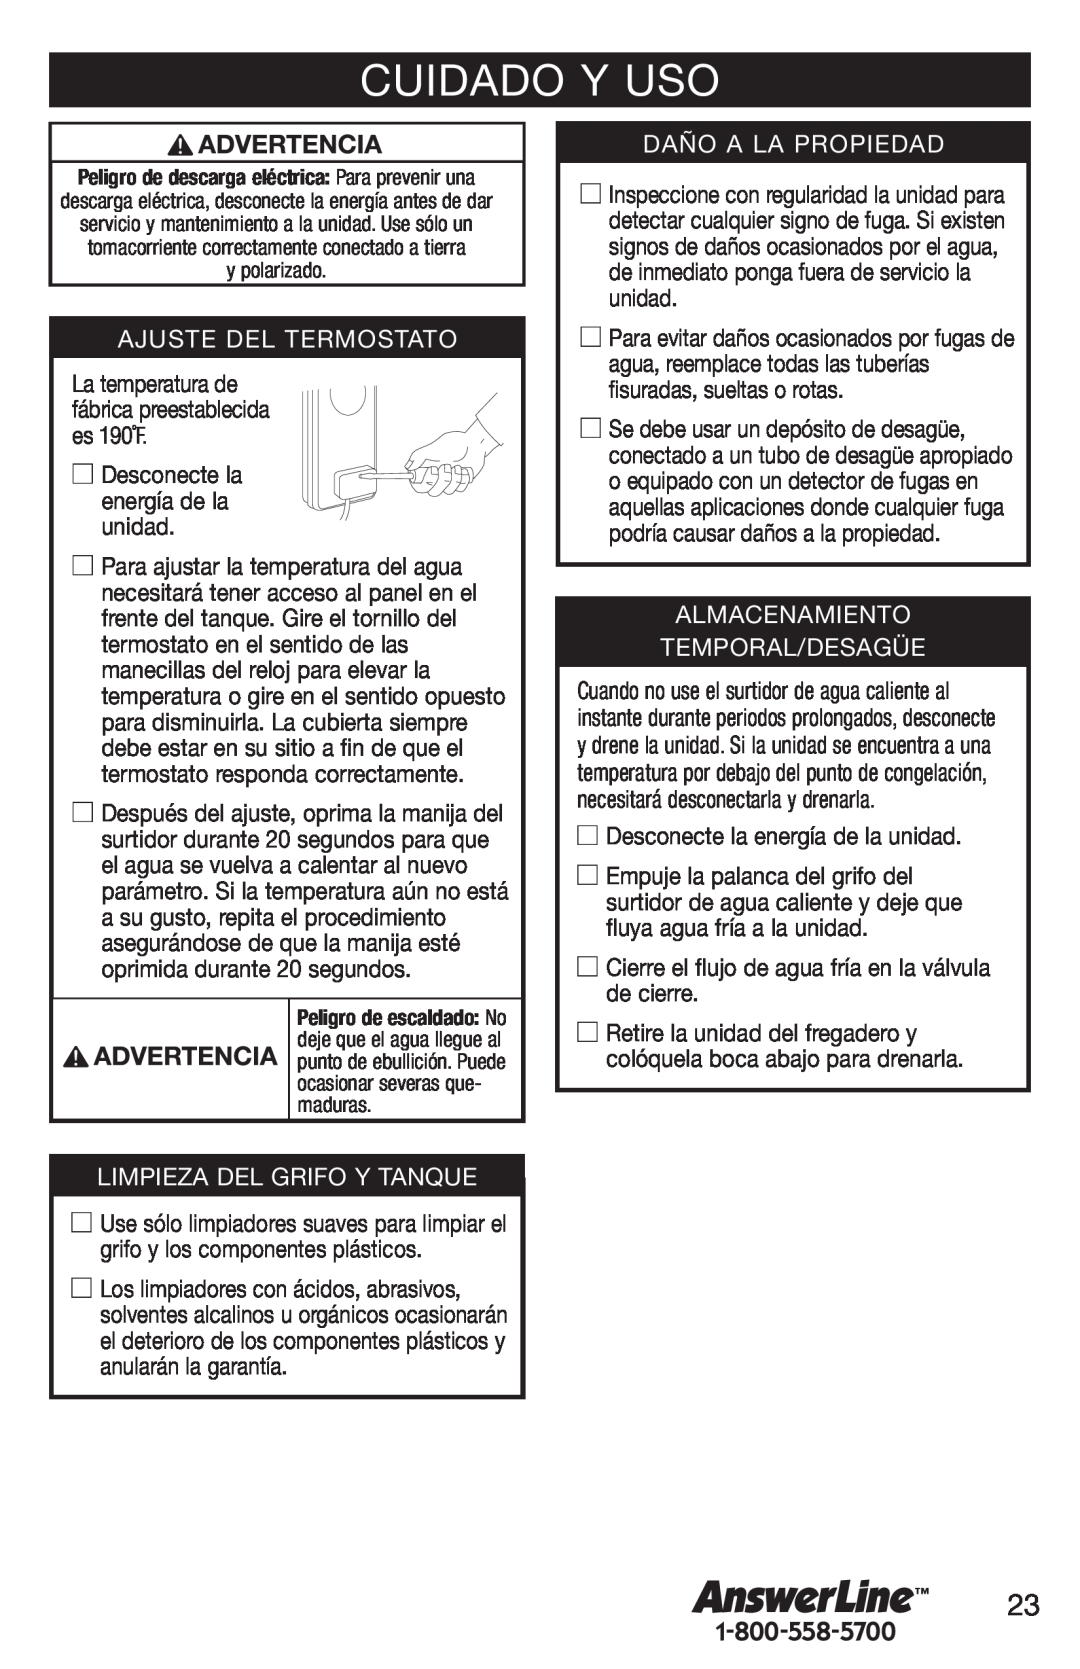 Emerson Hot1 manual Cuidado Y Uso, Ajuste Del Termostato, Limpieza Del Grifo Y Tanque, Daño A La Propiedad 